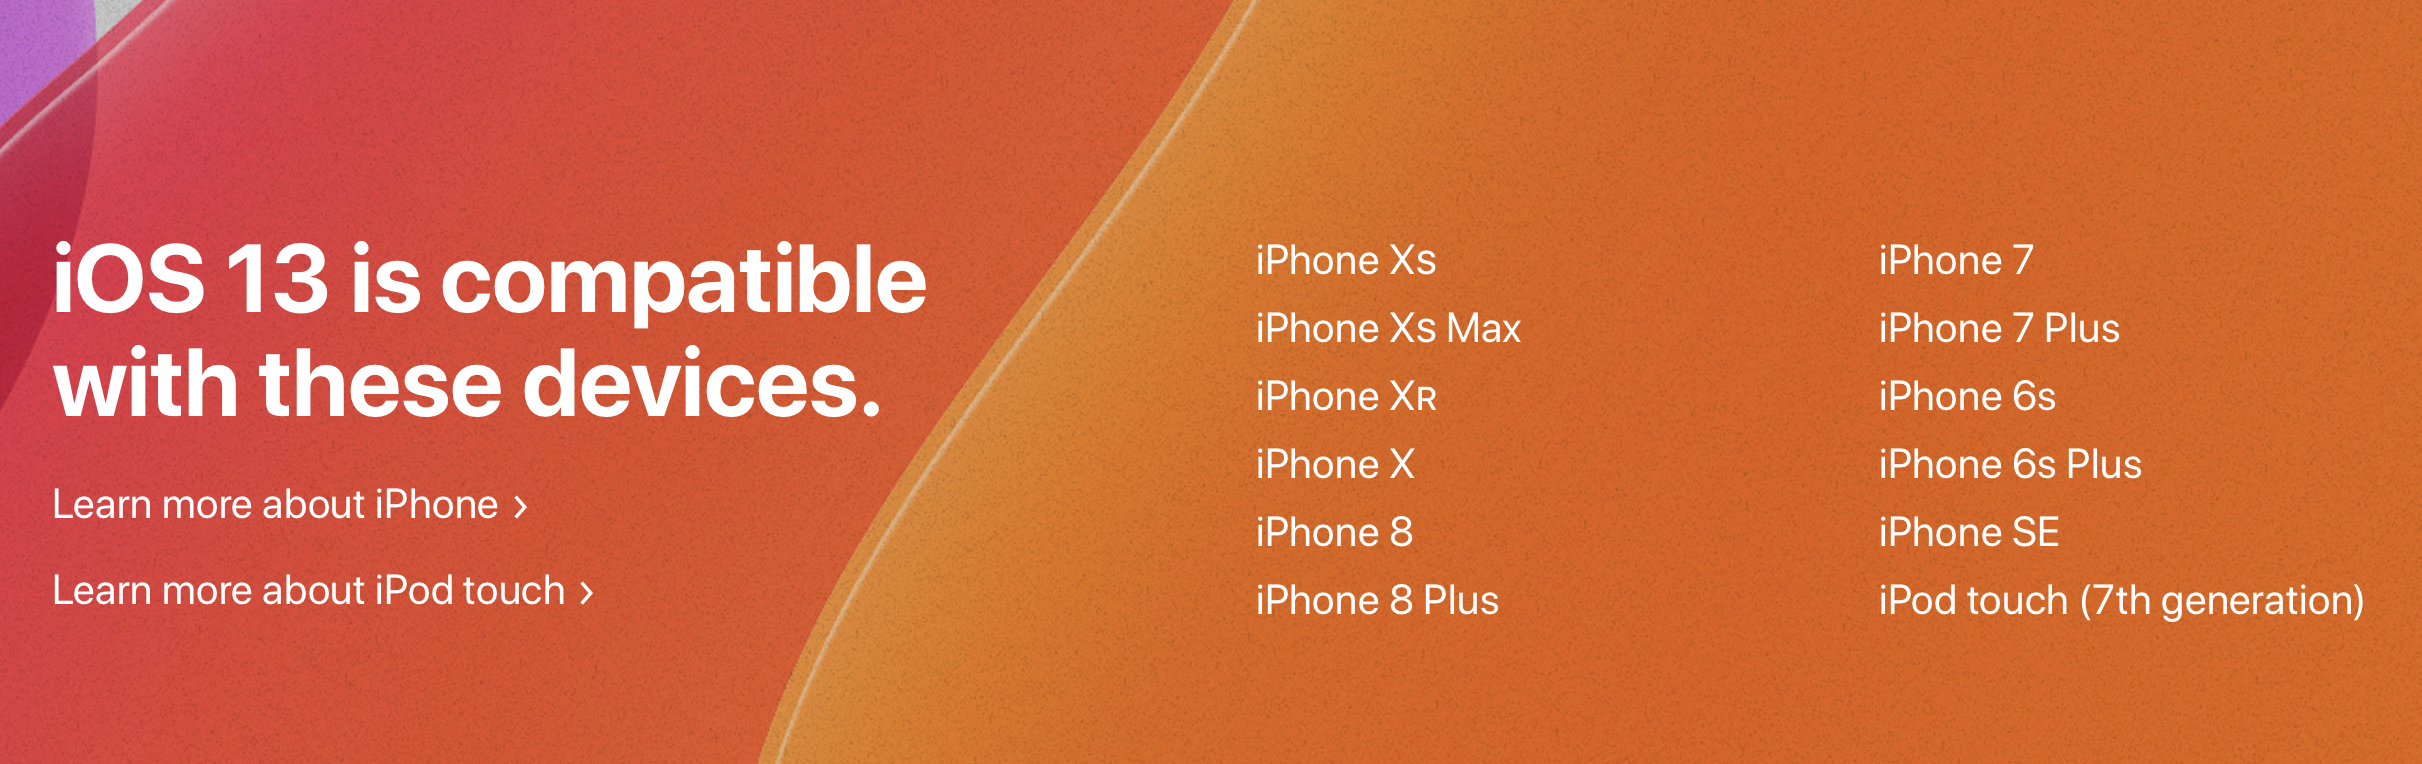 Daftar perangkat yang mendukung iOS 13